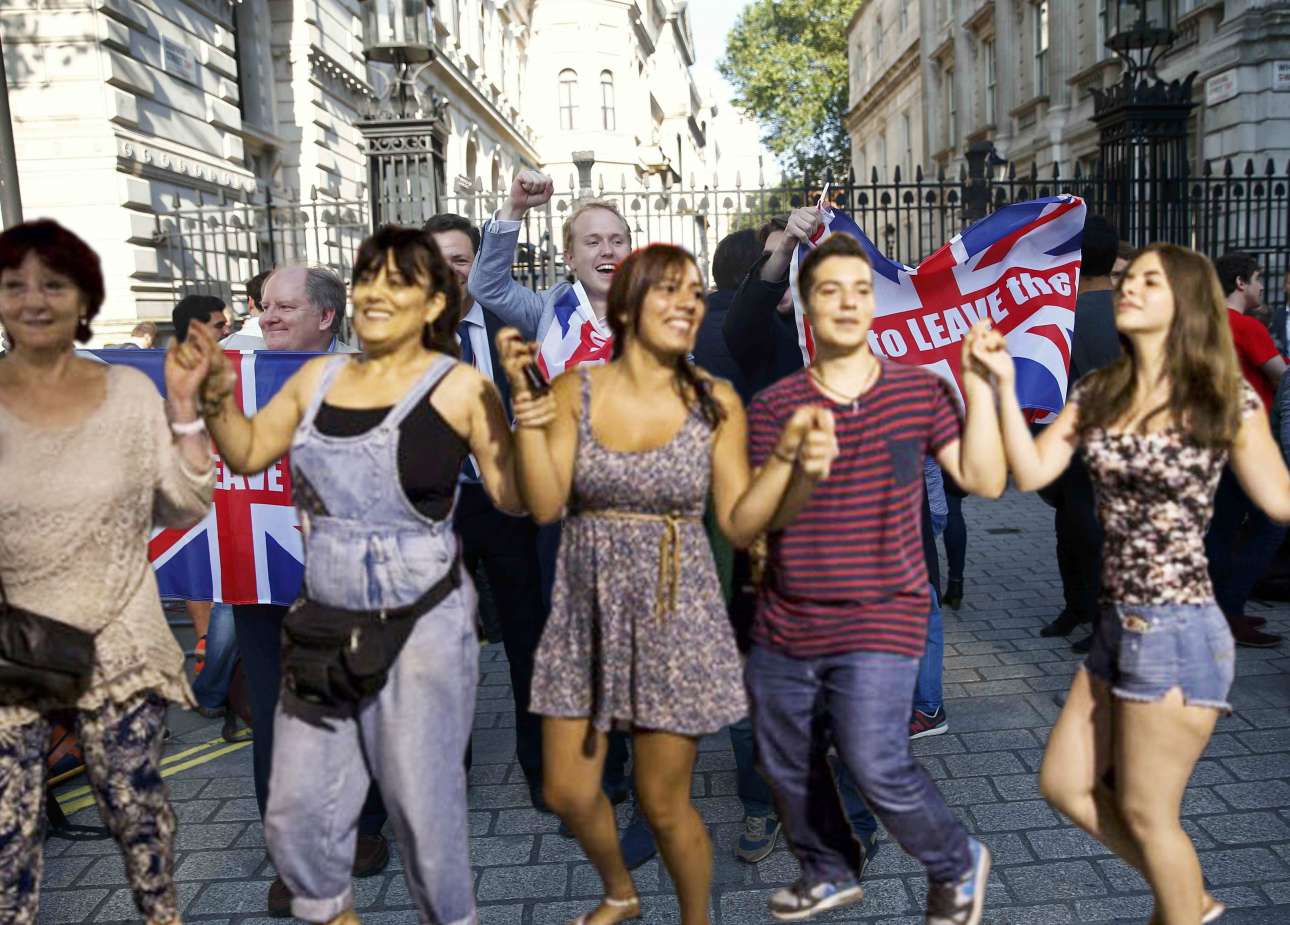 Με την εθνική δημοψηφισματική στολή το συγκρότημα των «Ohians» γοήτευσε το βρετανικό αντιευρωπαϊκό κοινό